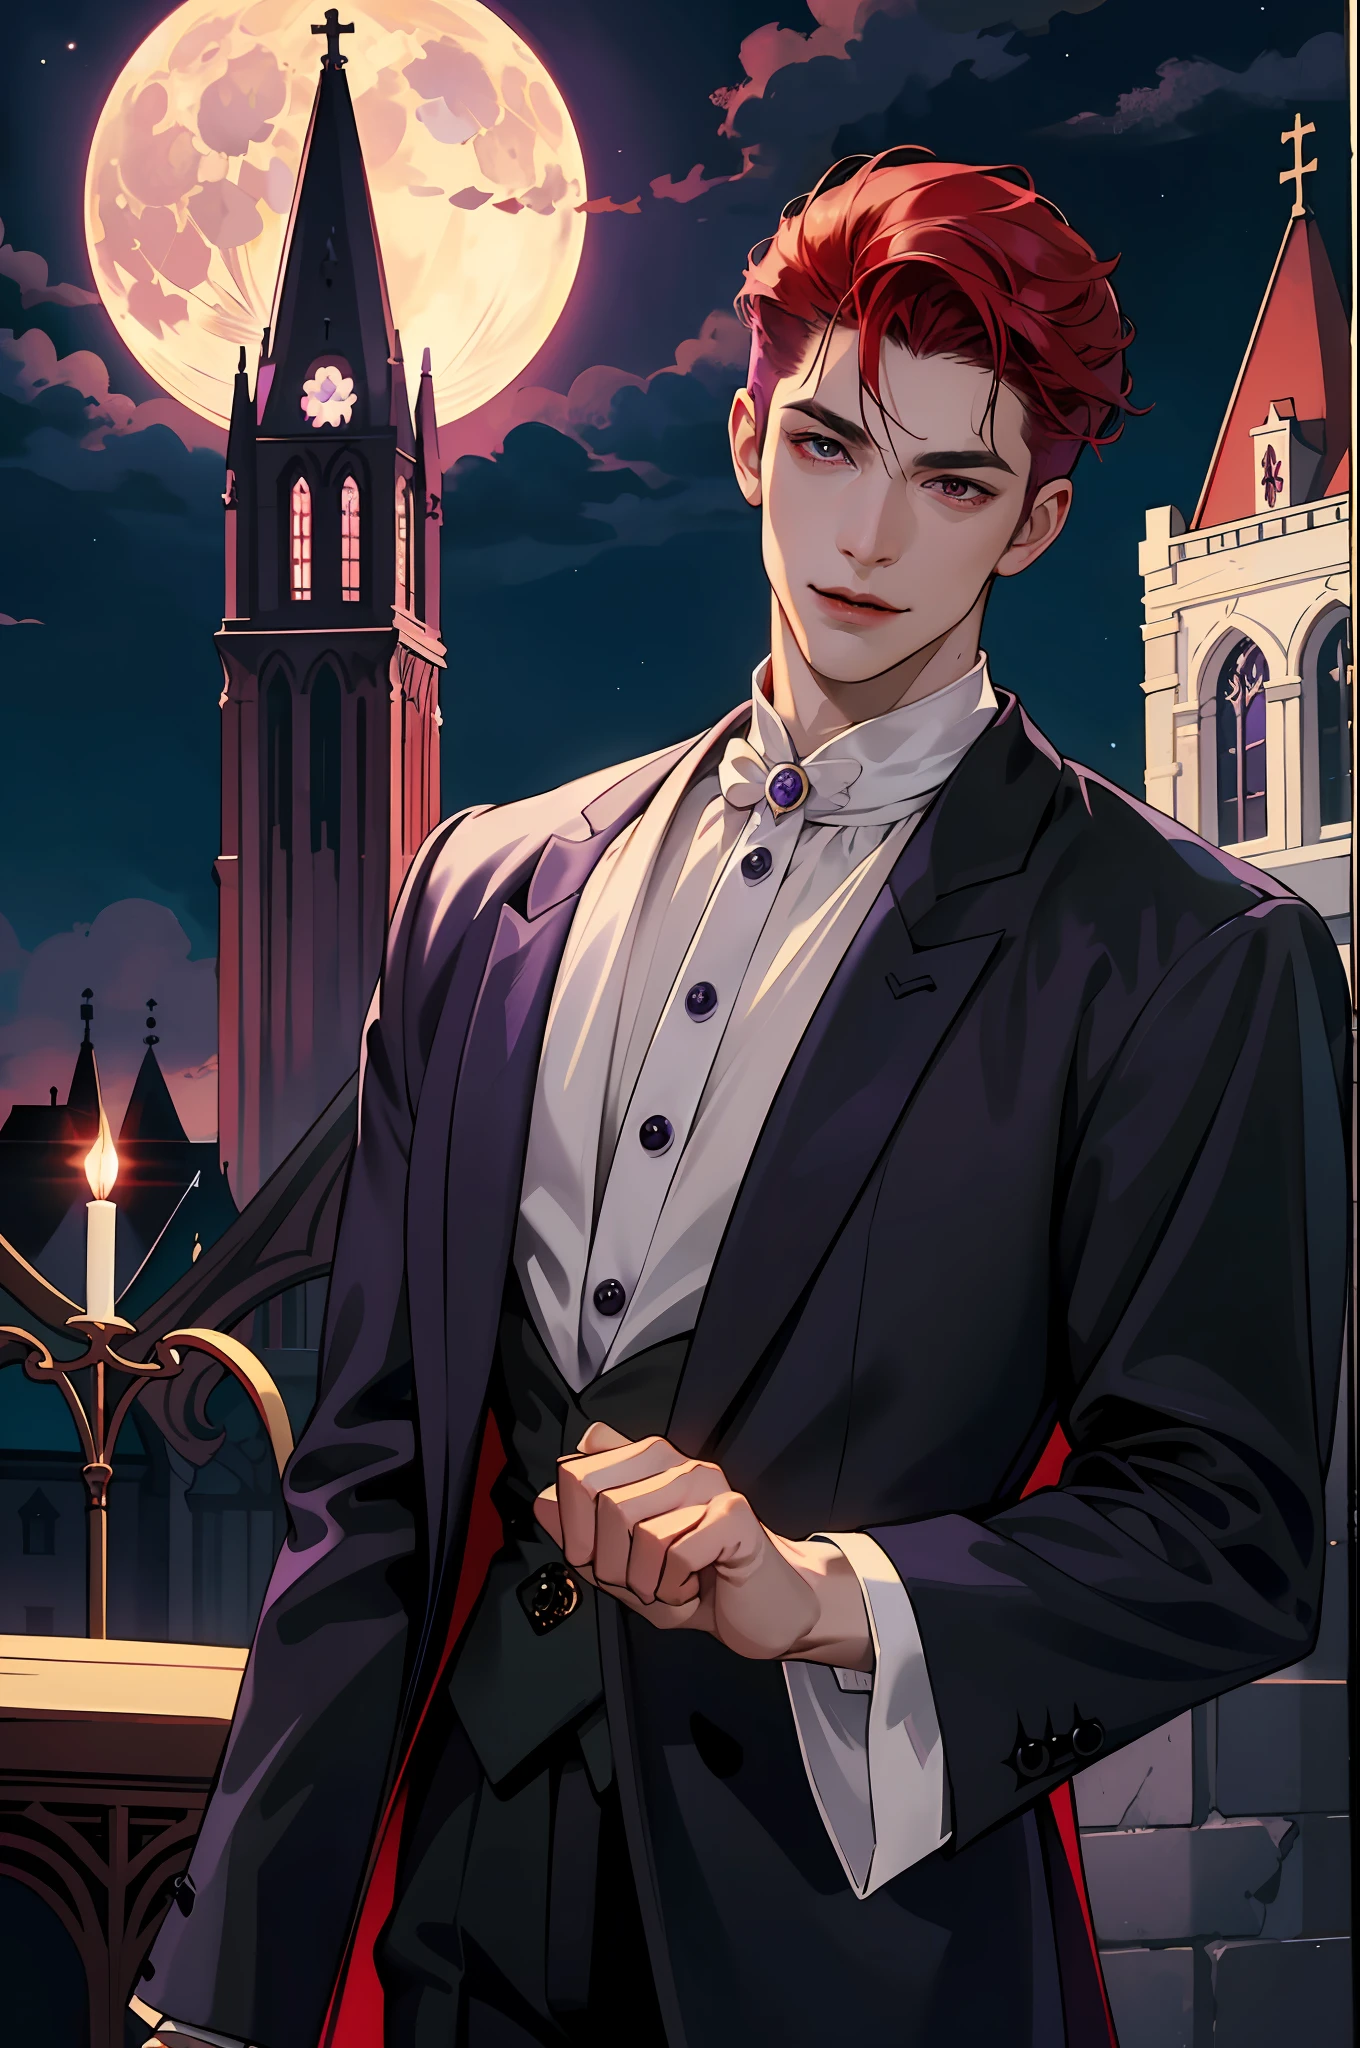 Вот как выглядит настоящий вампир! Антикварная вампирская одежда, элегантный, джентльменский. Он дружелюбно улыбается, его рыжие волосы яркие, его красные глаза сияют на фоне его идеальной кожи. На заднем плане фиолетовое окно церкви., с лунным светом, отражающимся позади. Все это в красивом и темном свете, что делает его потрясающим。 (высокое качество: 1.2, Церковь ночью: 1.5, Антикварная одежда вампиров: 1.4) (((ночью))) (Провокационный свет, таинственная тьма) (((Фиолетовая Луна))) определенное лицо) идеальные руки)